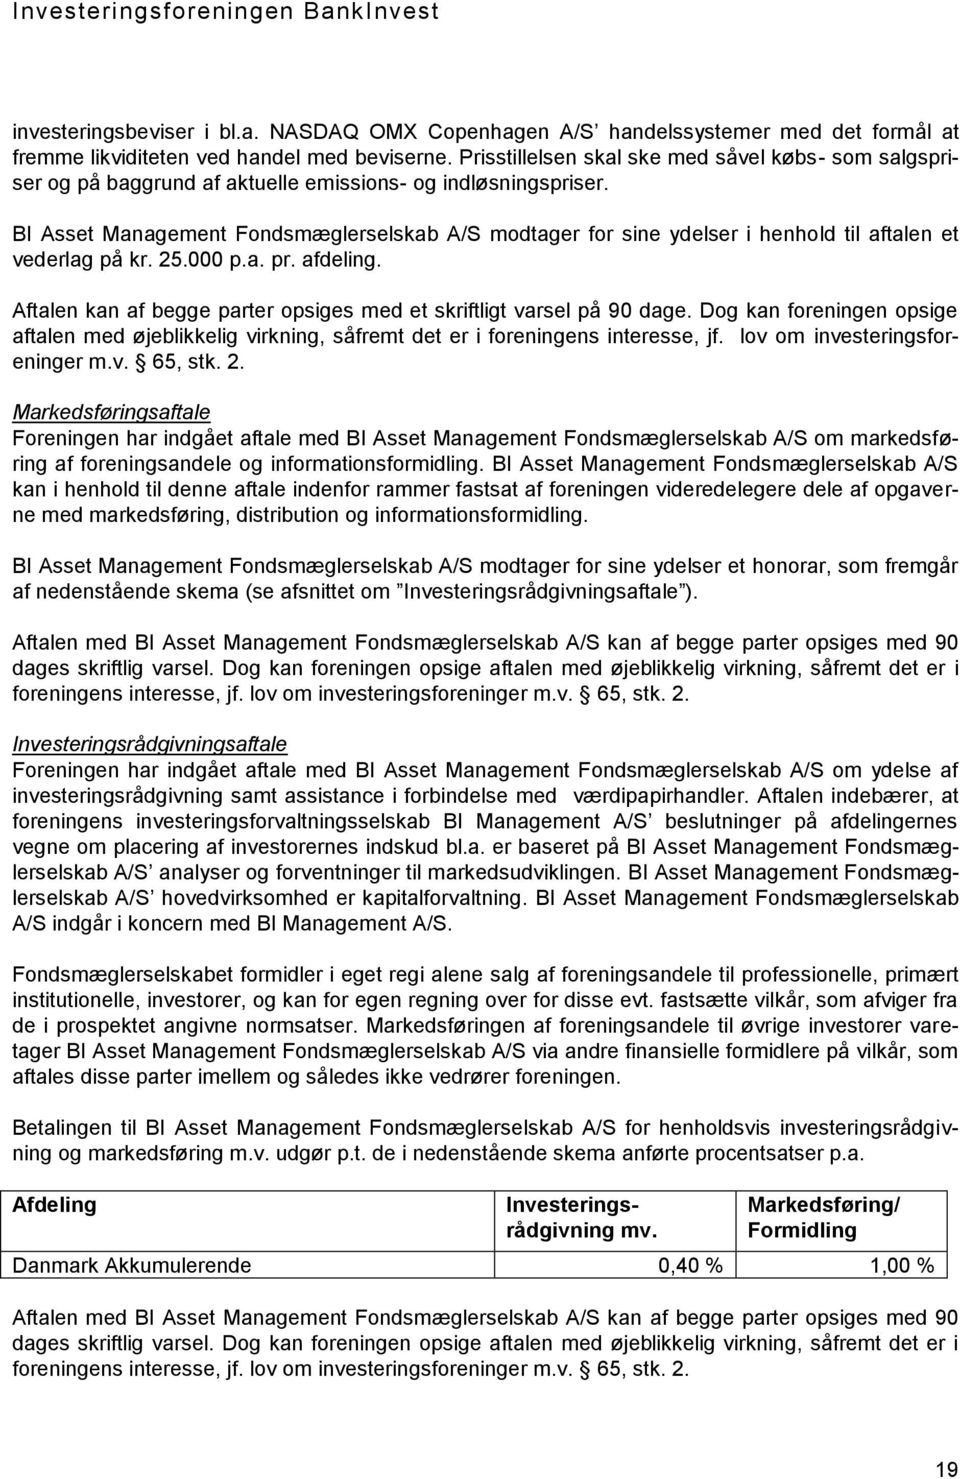 BI Asset Management Fondsmæglerselskab A/S modtager for sine ydelser i henhold til aftalen et vederlag på kr. 25.000 p.a. pr. afdeling.